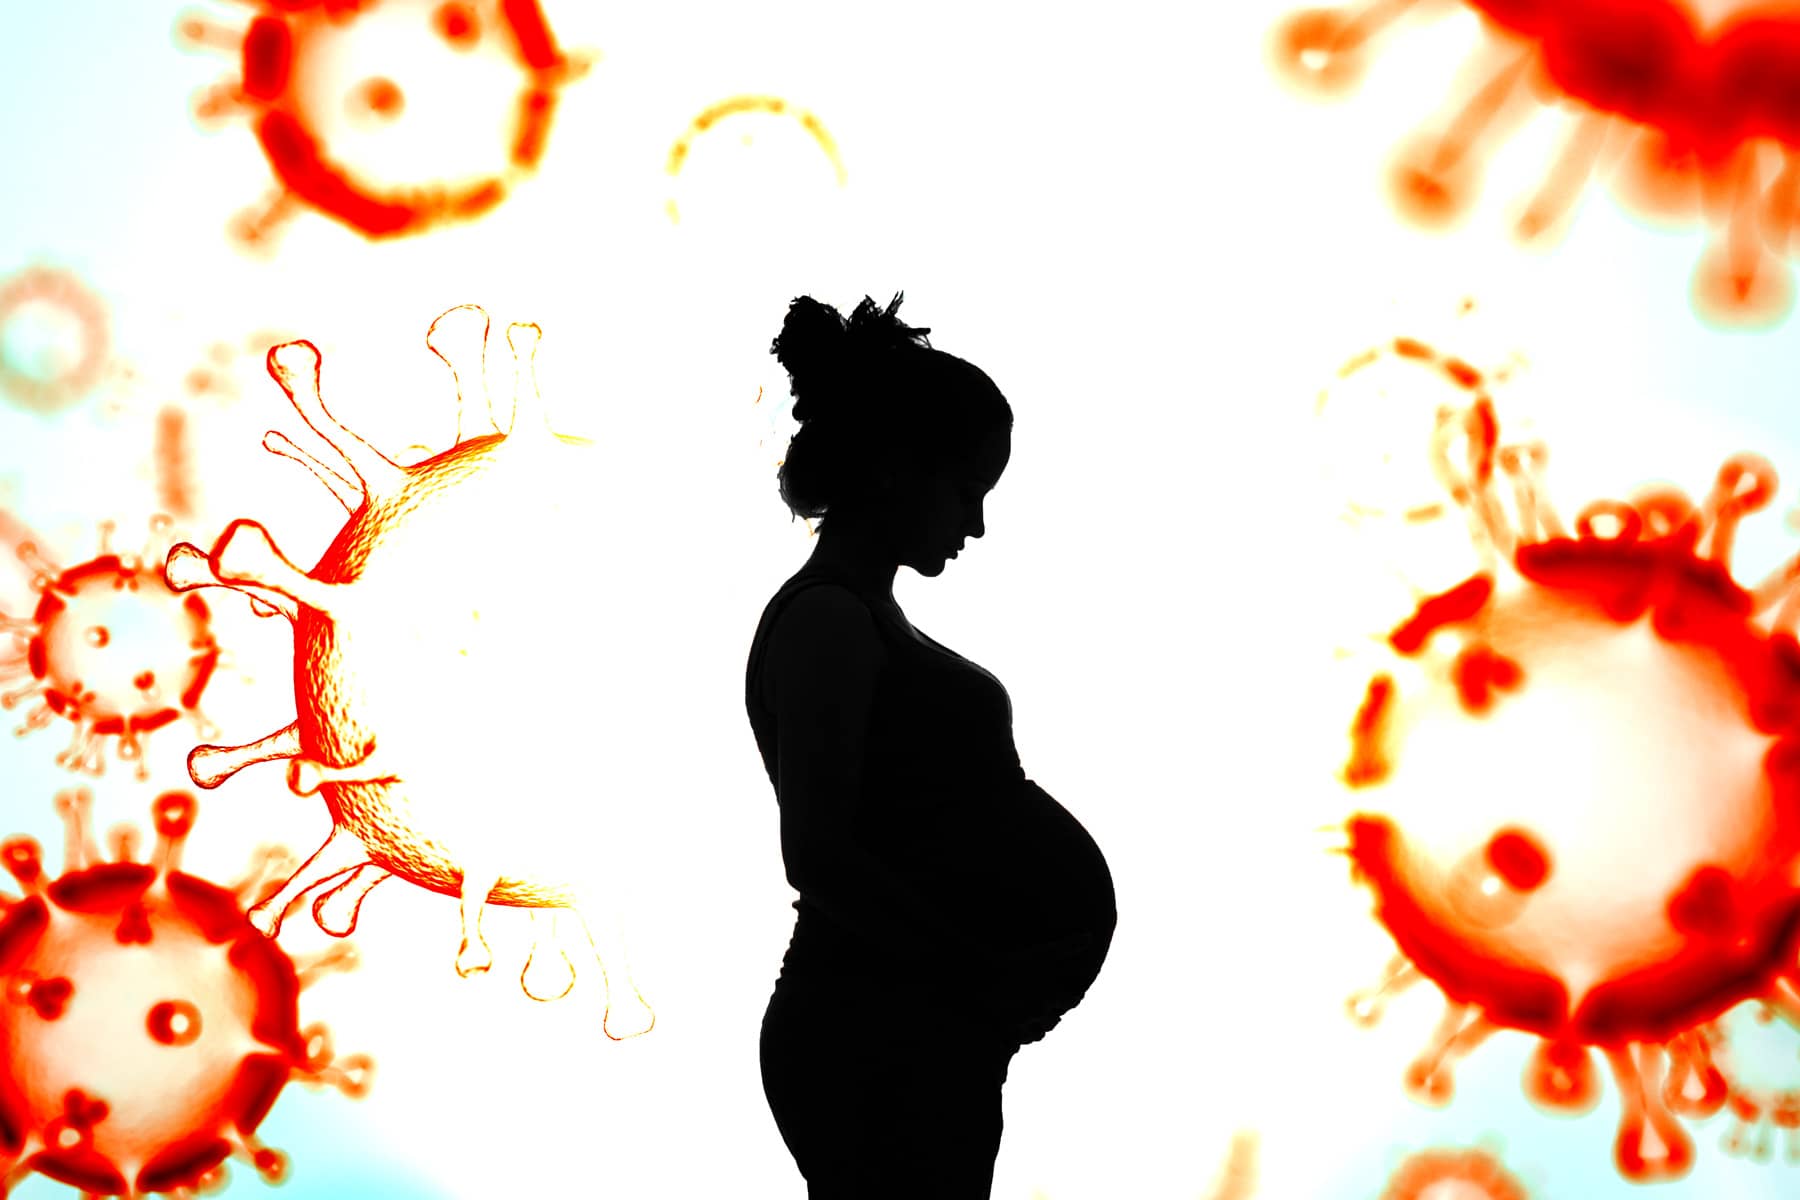 اگر در دوران بارداری مبتلا به کووید هستید، جنسیت کودک شما مهم است